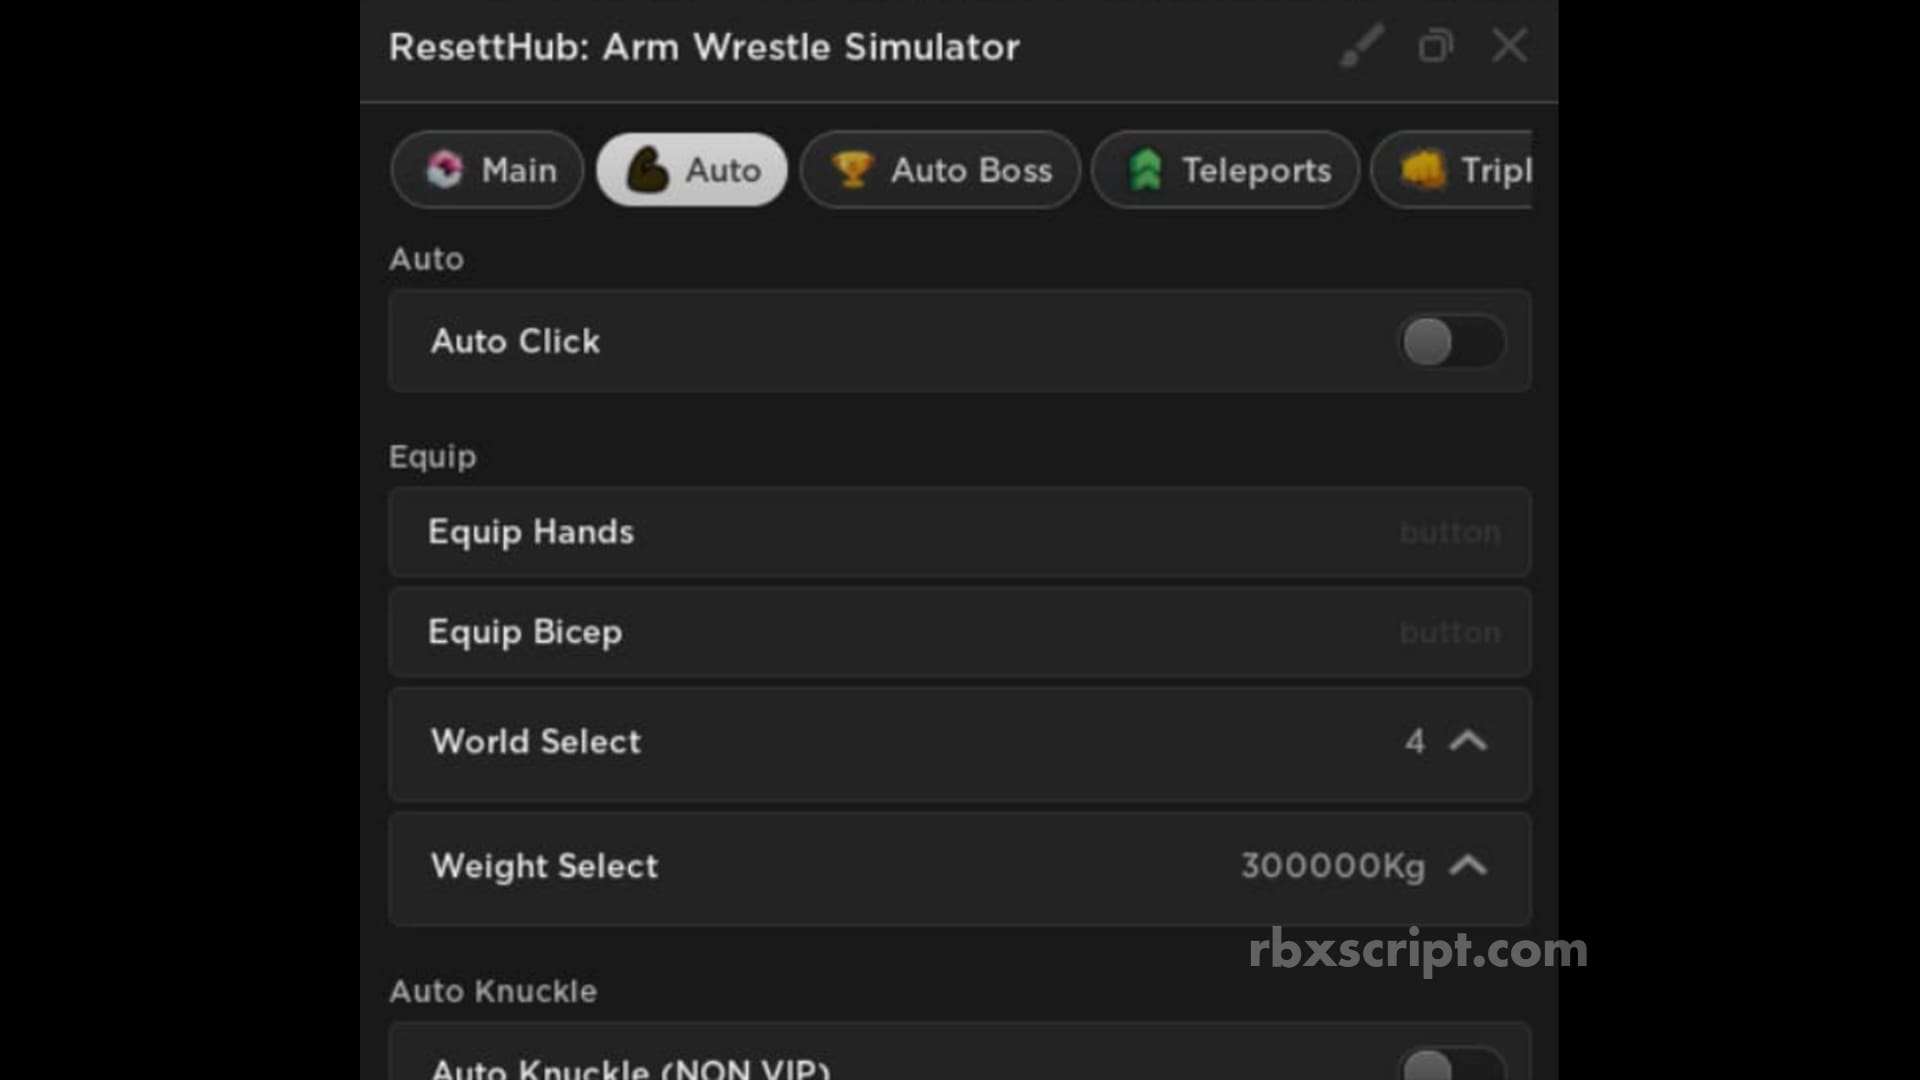 Arm Wrestle Simulator: Farm Boss, Auto Click, Auto Knuckle